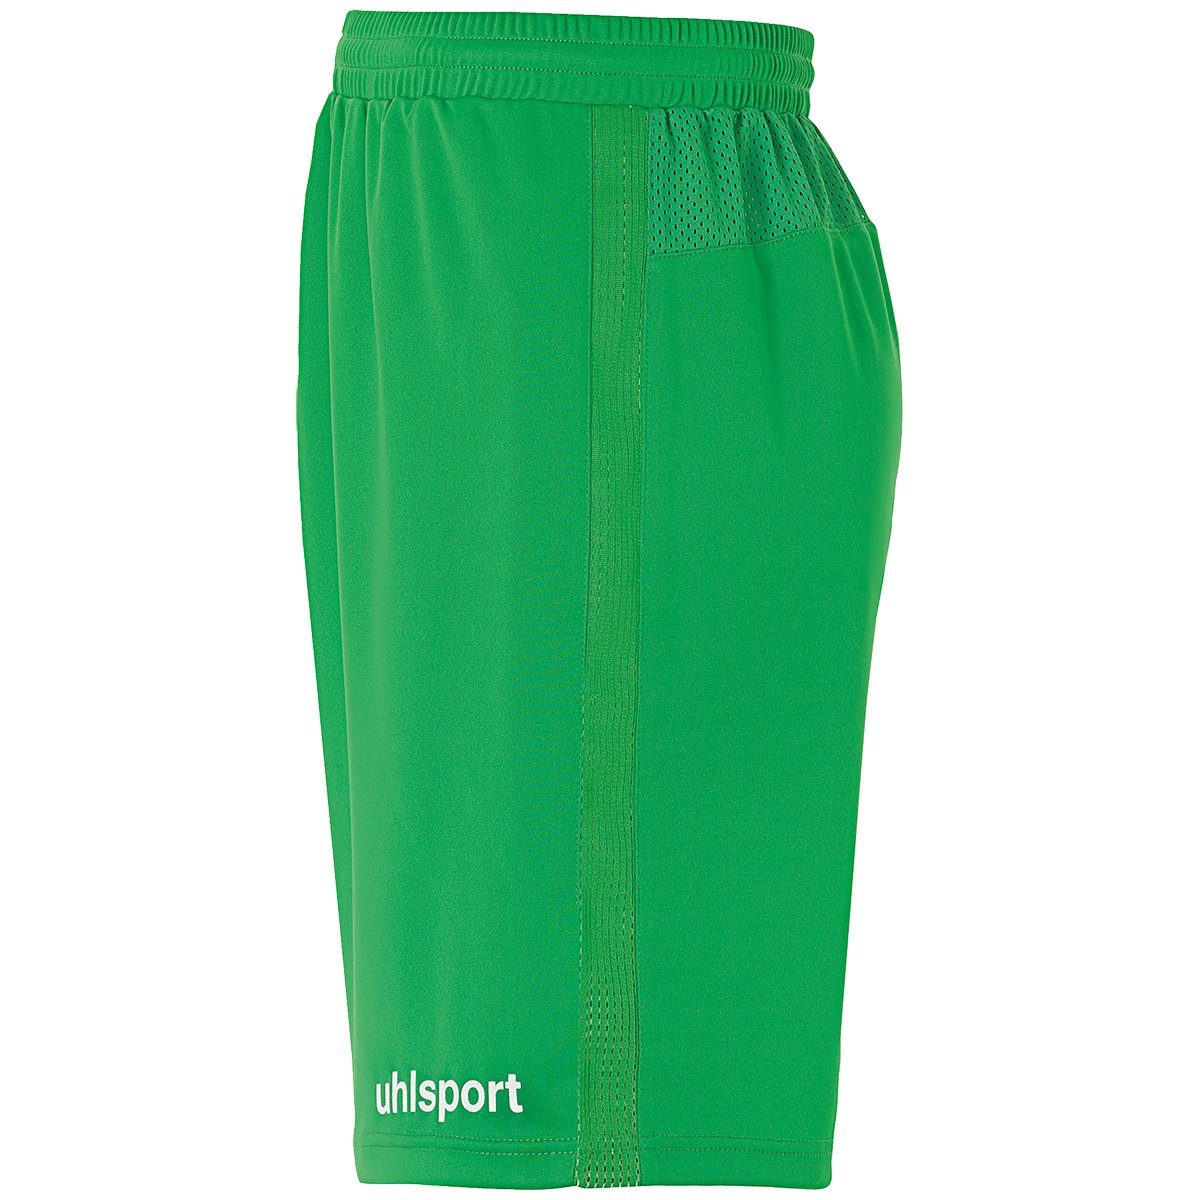 uhlsport Shorts uhlsport Shorts SHORTS grün/weiß PERFORMANCE